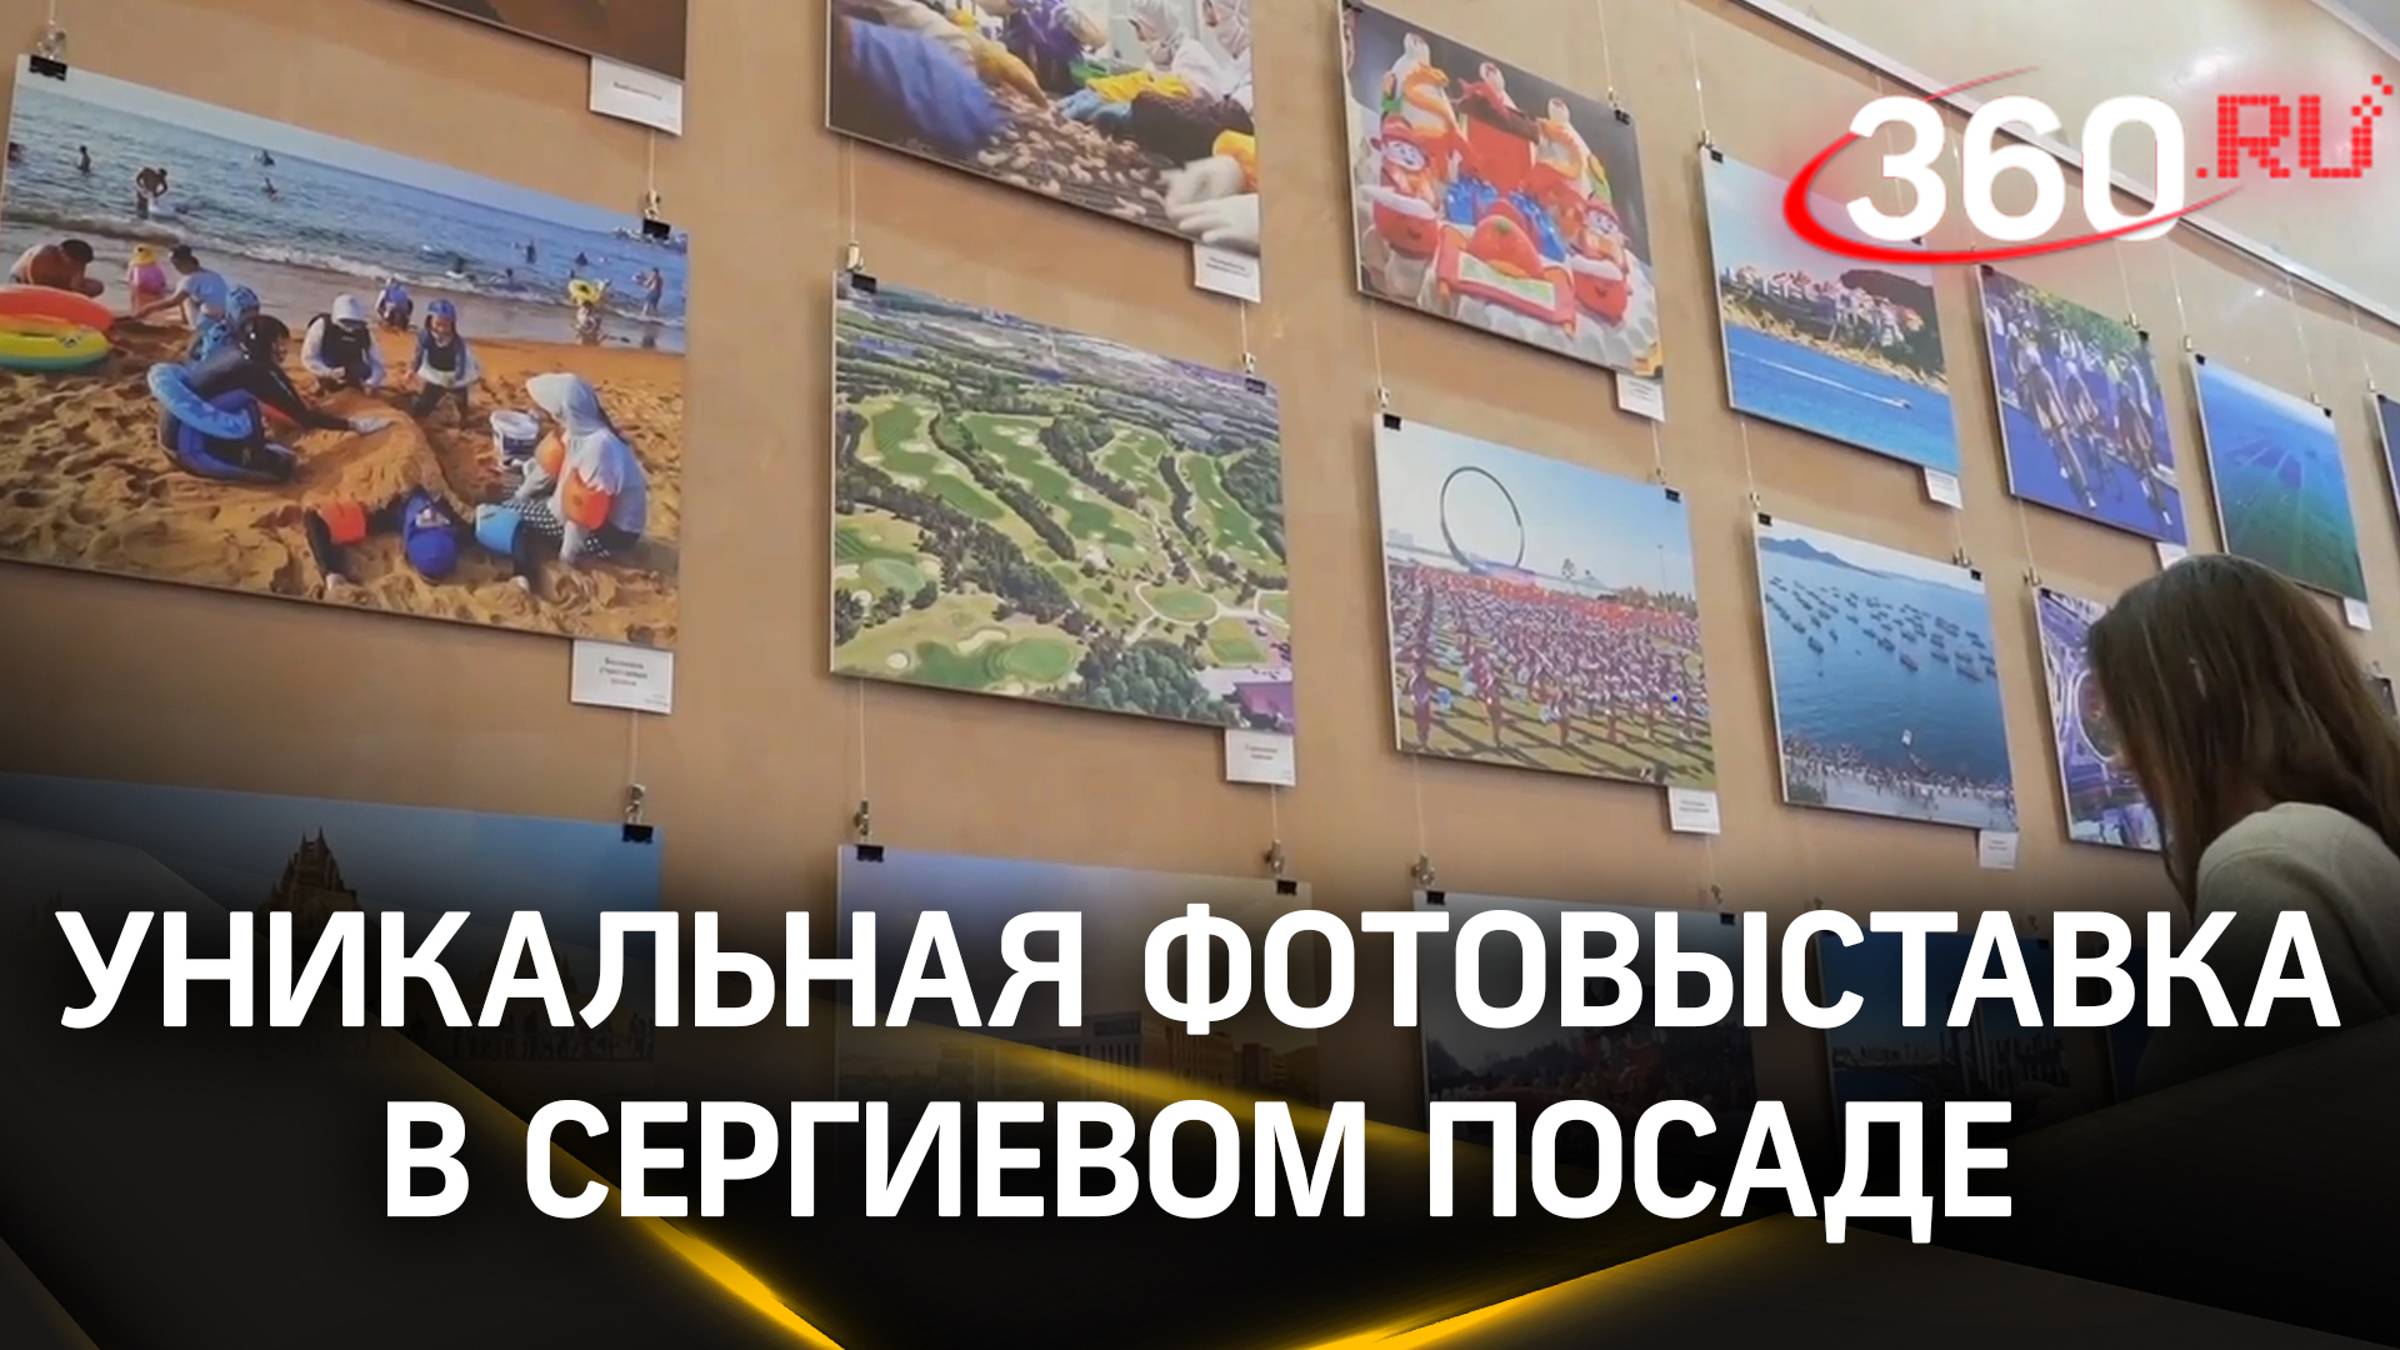 В Сергиевом Посаде открылась уникальная фотовыставка